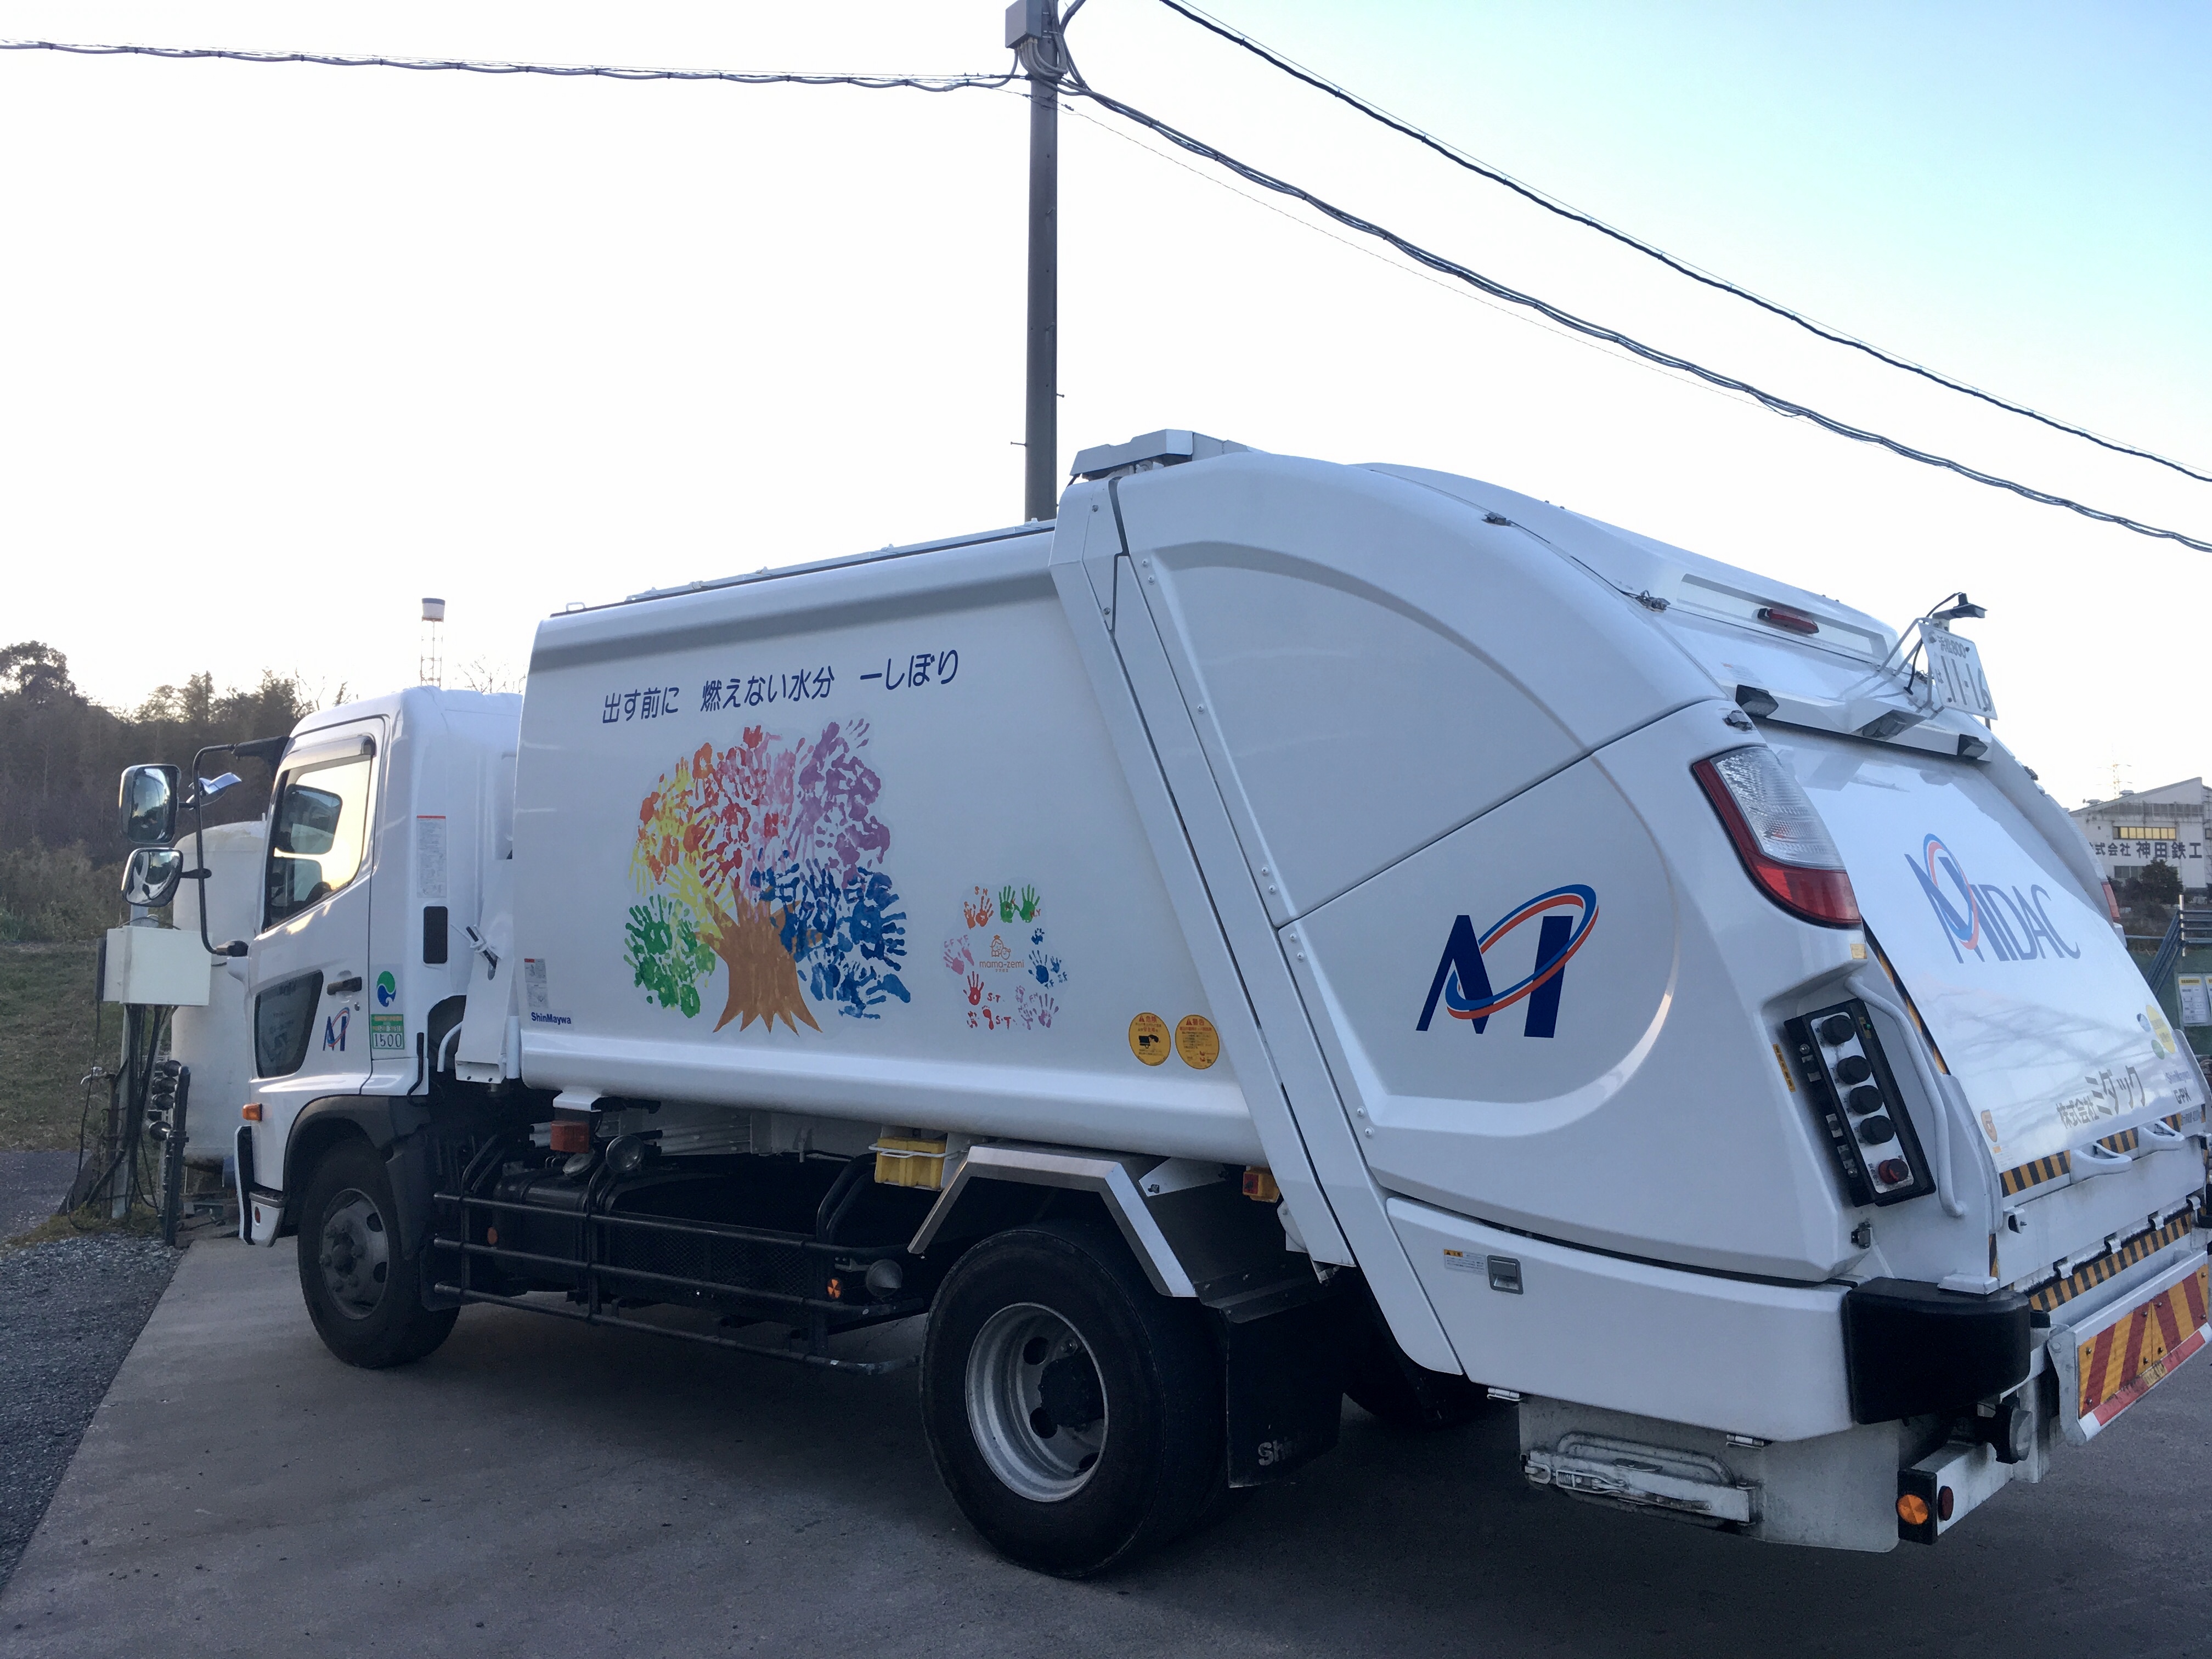 ゴミ収集車 ラッピング企画第2弾 はままつママゼミ Mamazemi ママのための託児付講座 静岡県浜松市で開催中